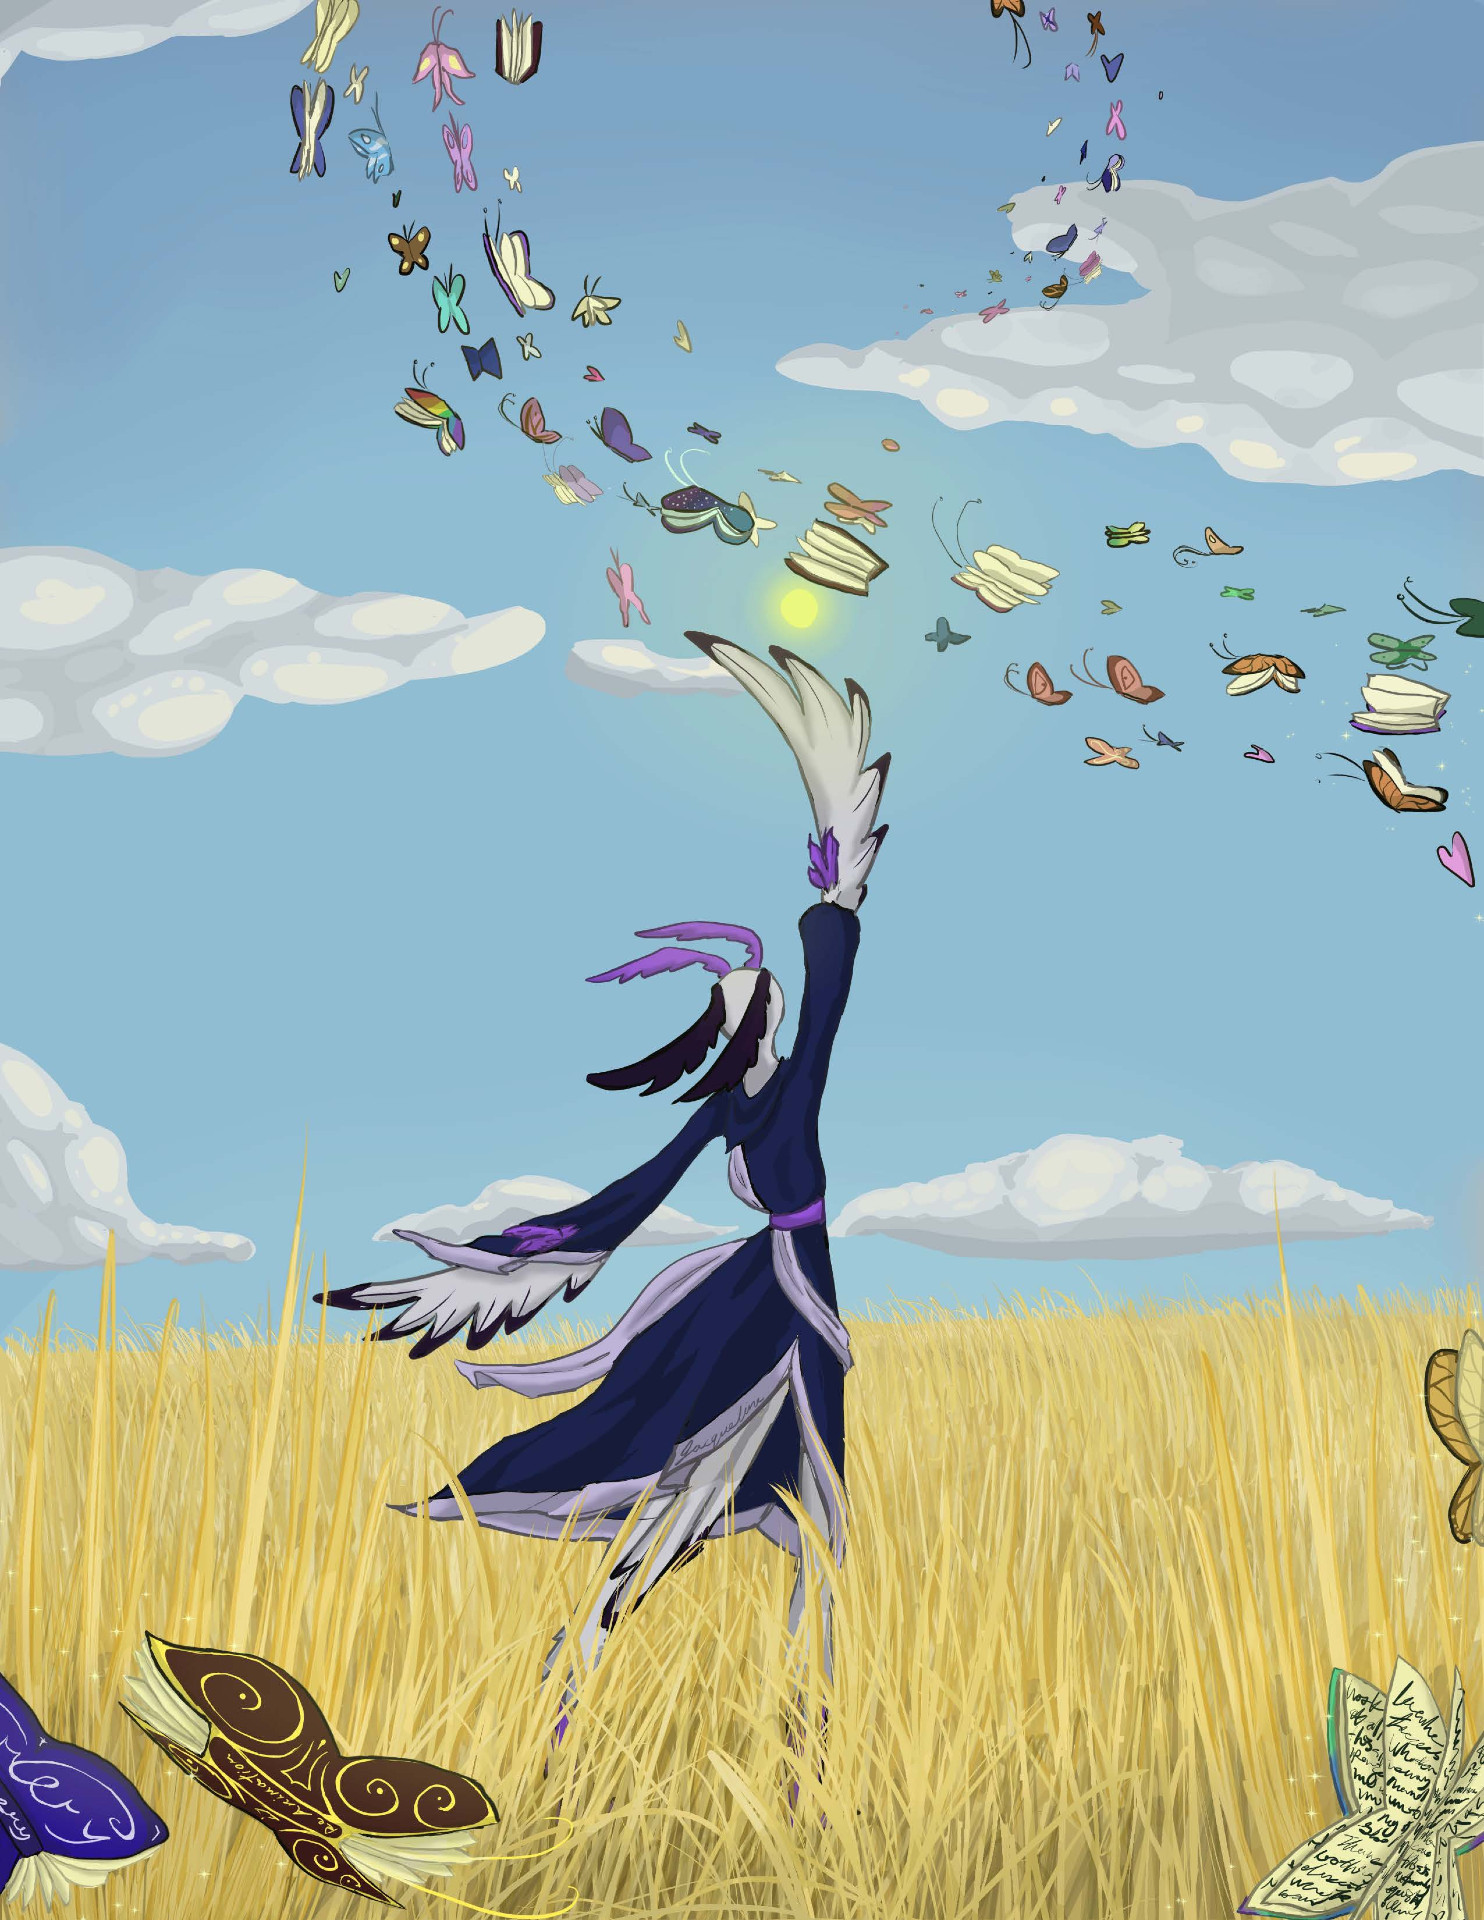 Arte que muestra a una persona parada en un campo con mariposas revoloteando en el cielo